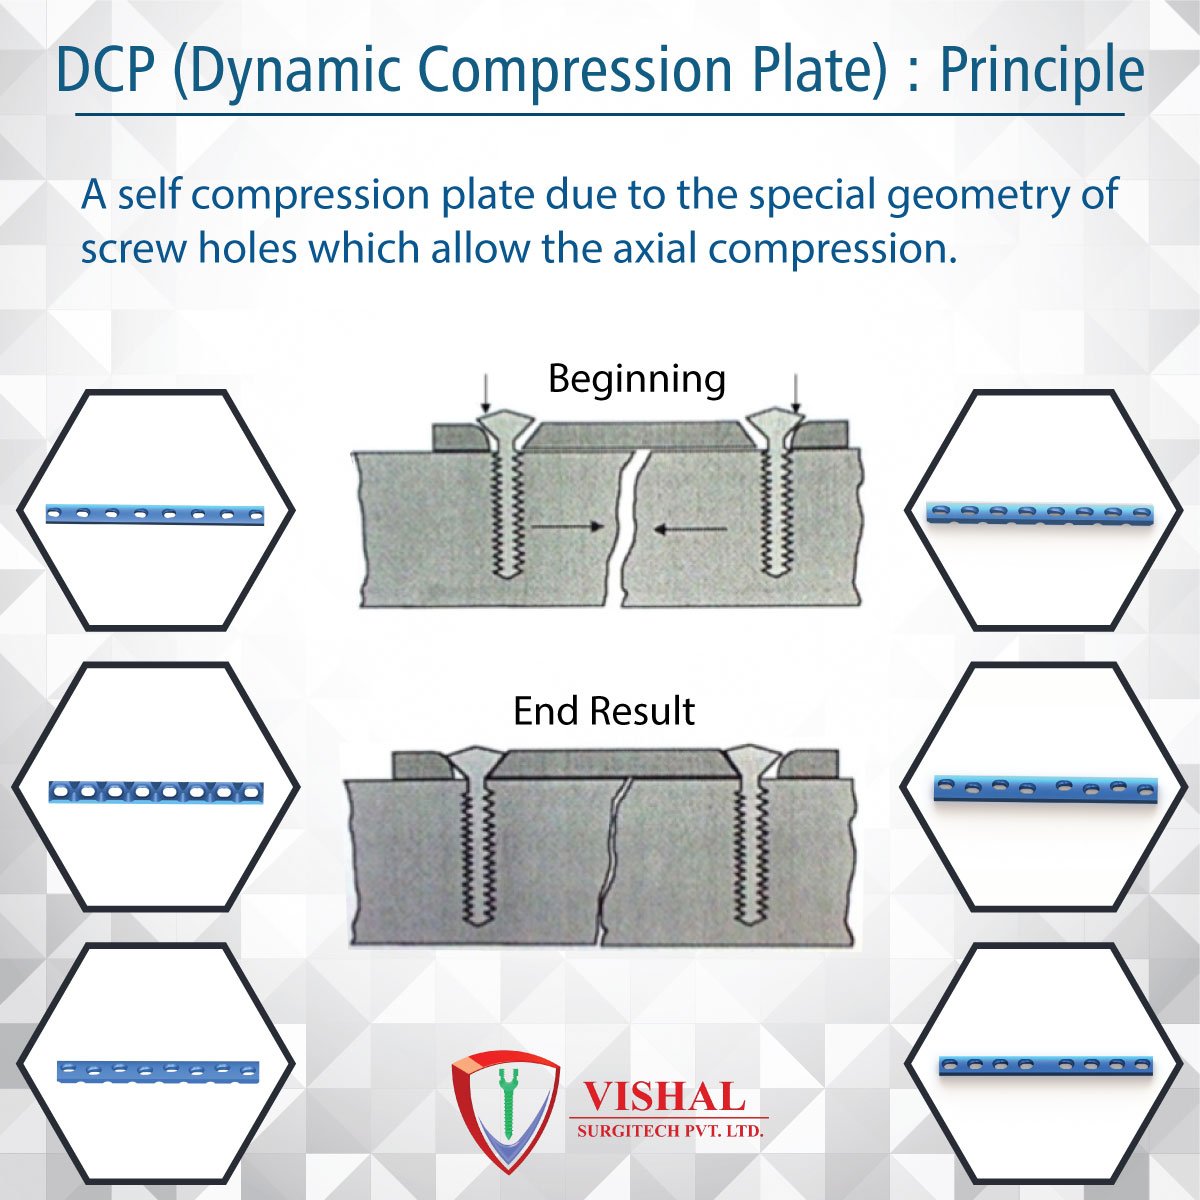 X-এ Vishal surgitech: DCP (Dynamic Compression Plate) Principle